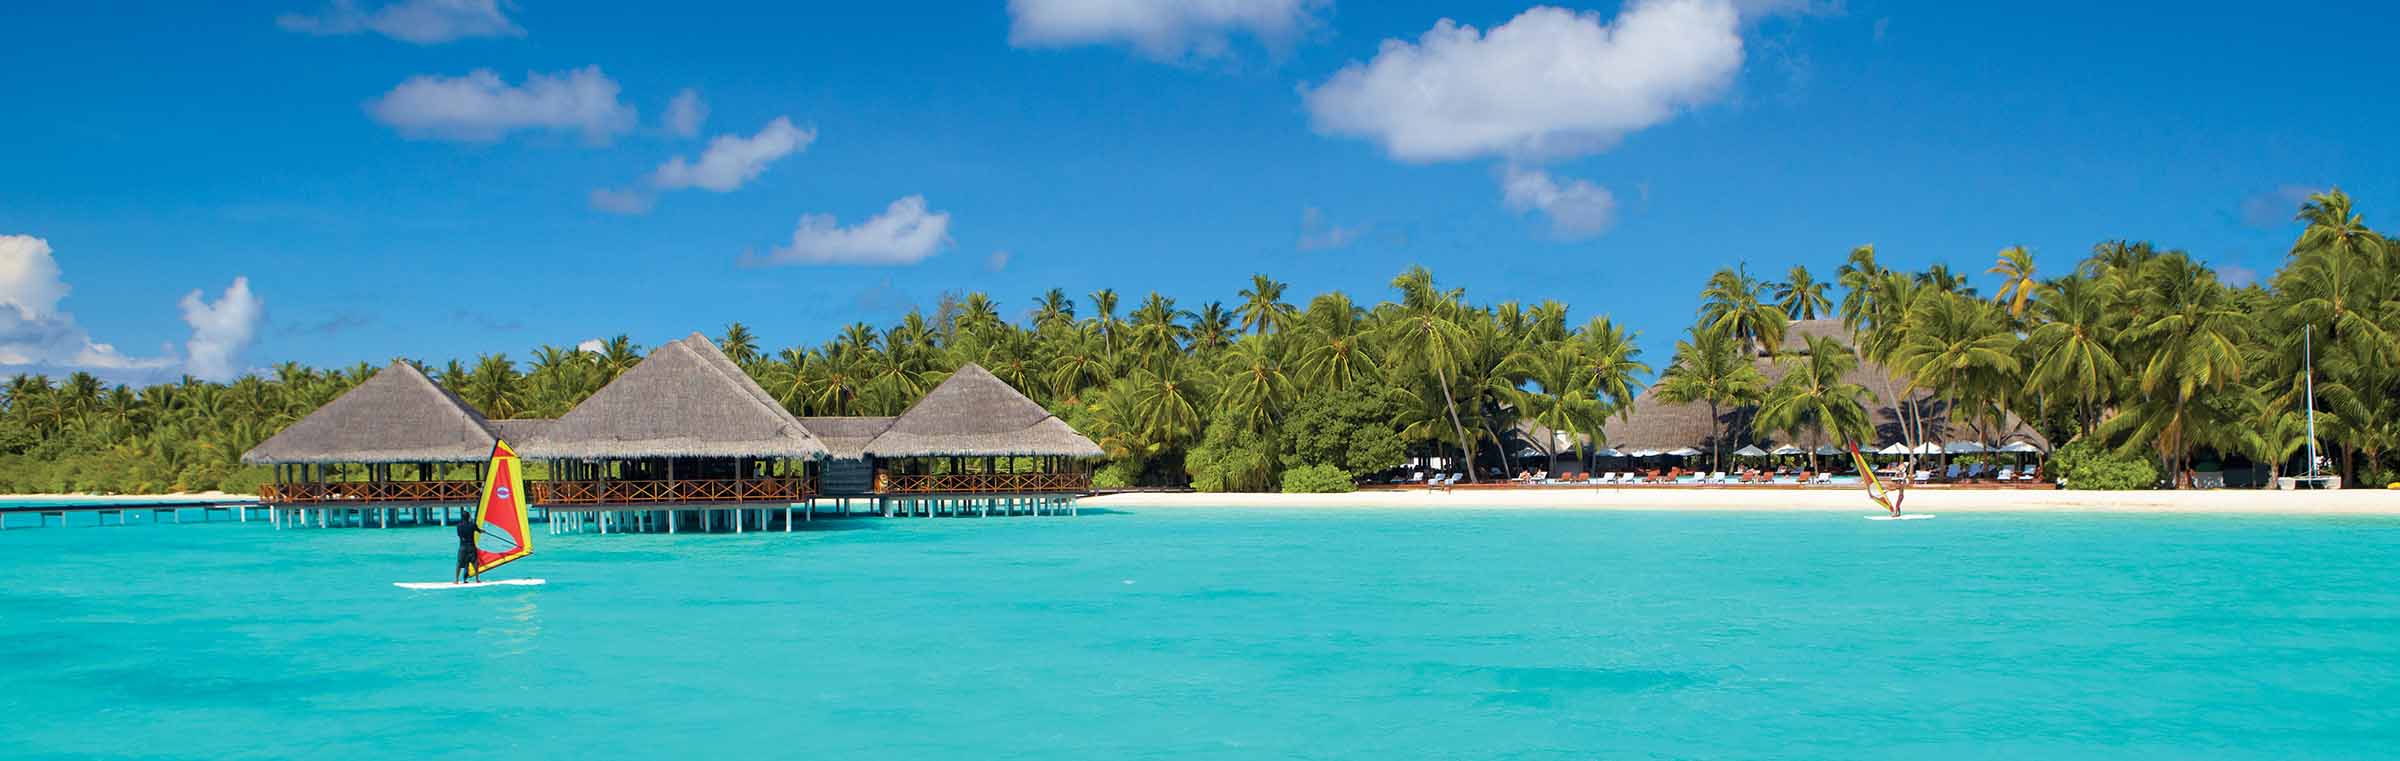 Medhufushi Island Maldives